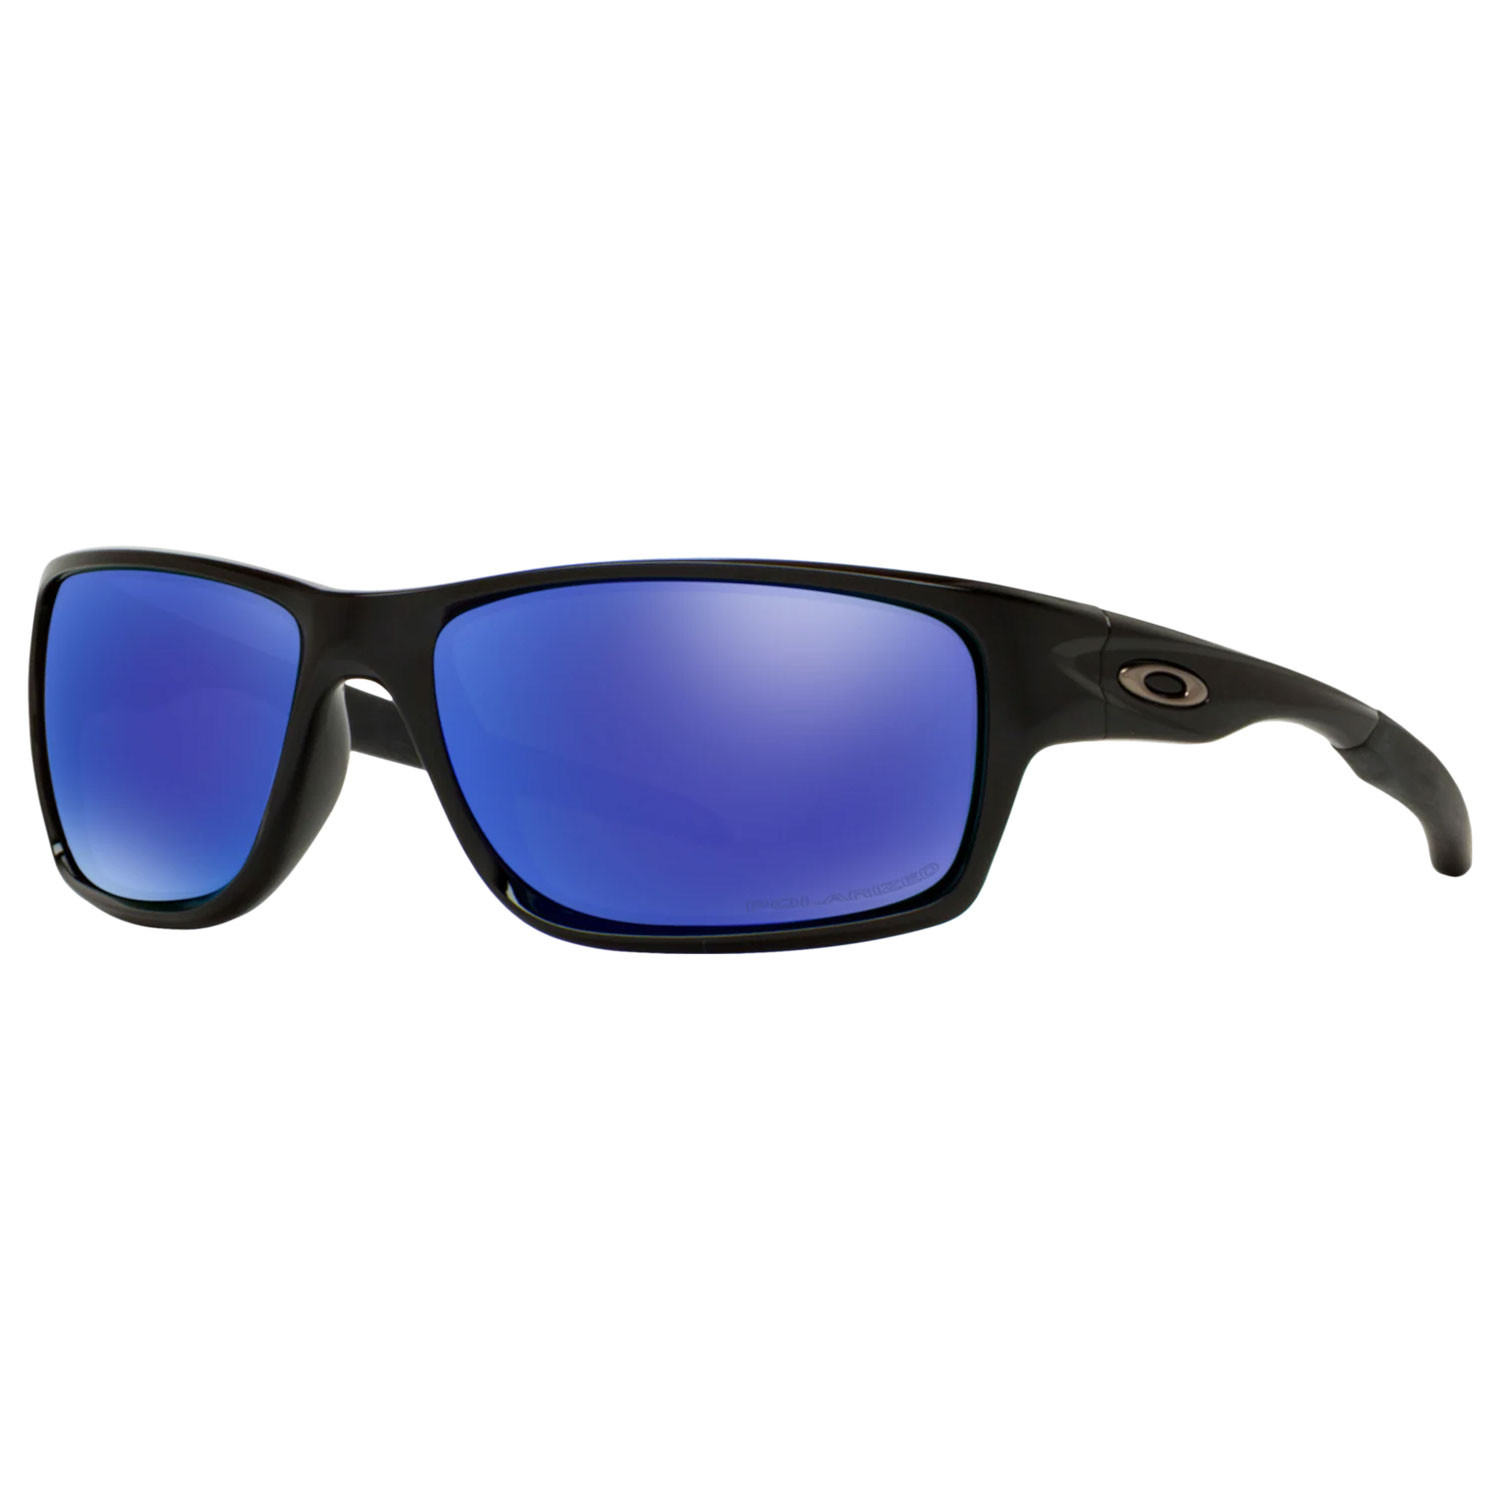 Oakley Canteen Polarized Sunglasses- Polished Black/Violet Iridium